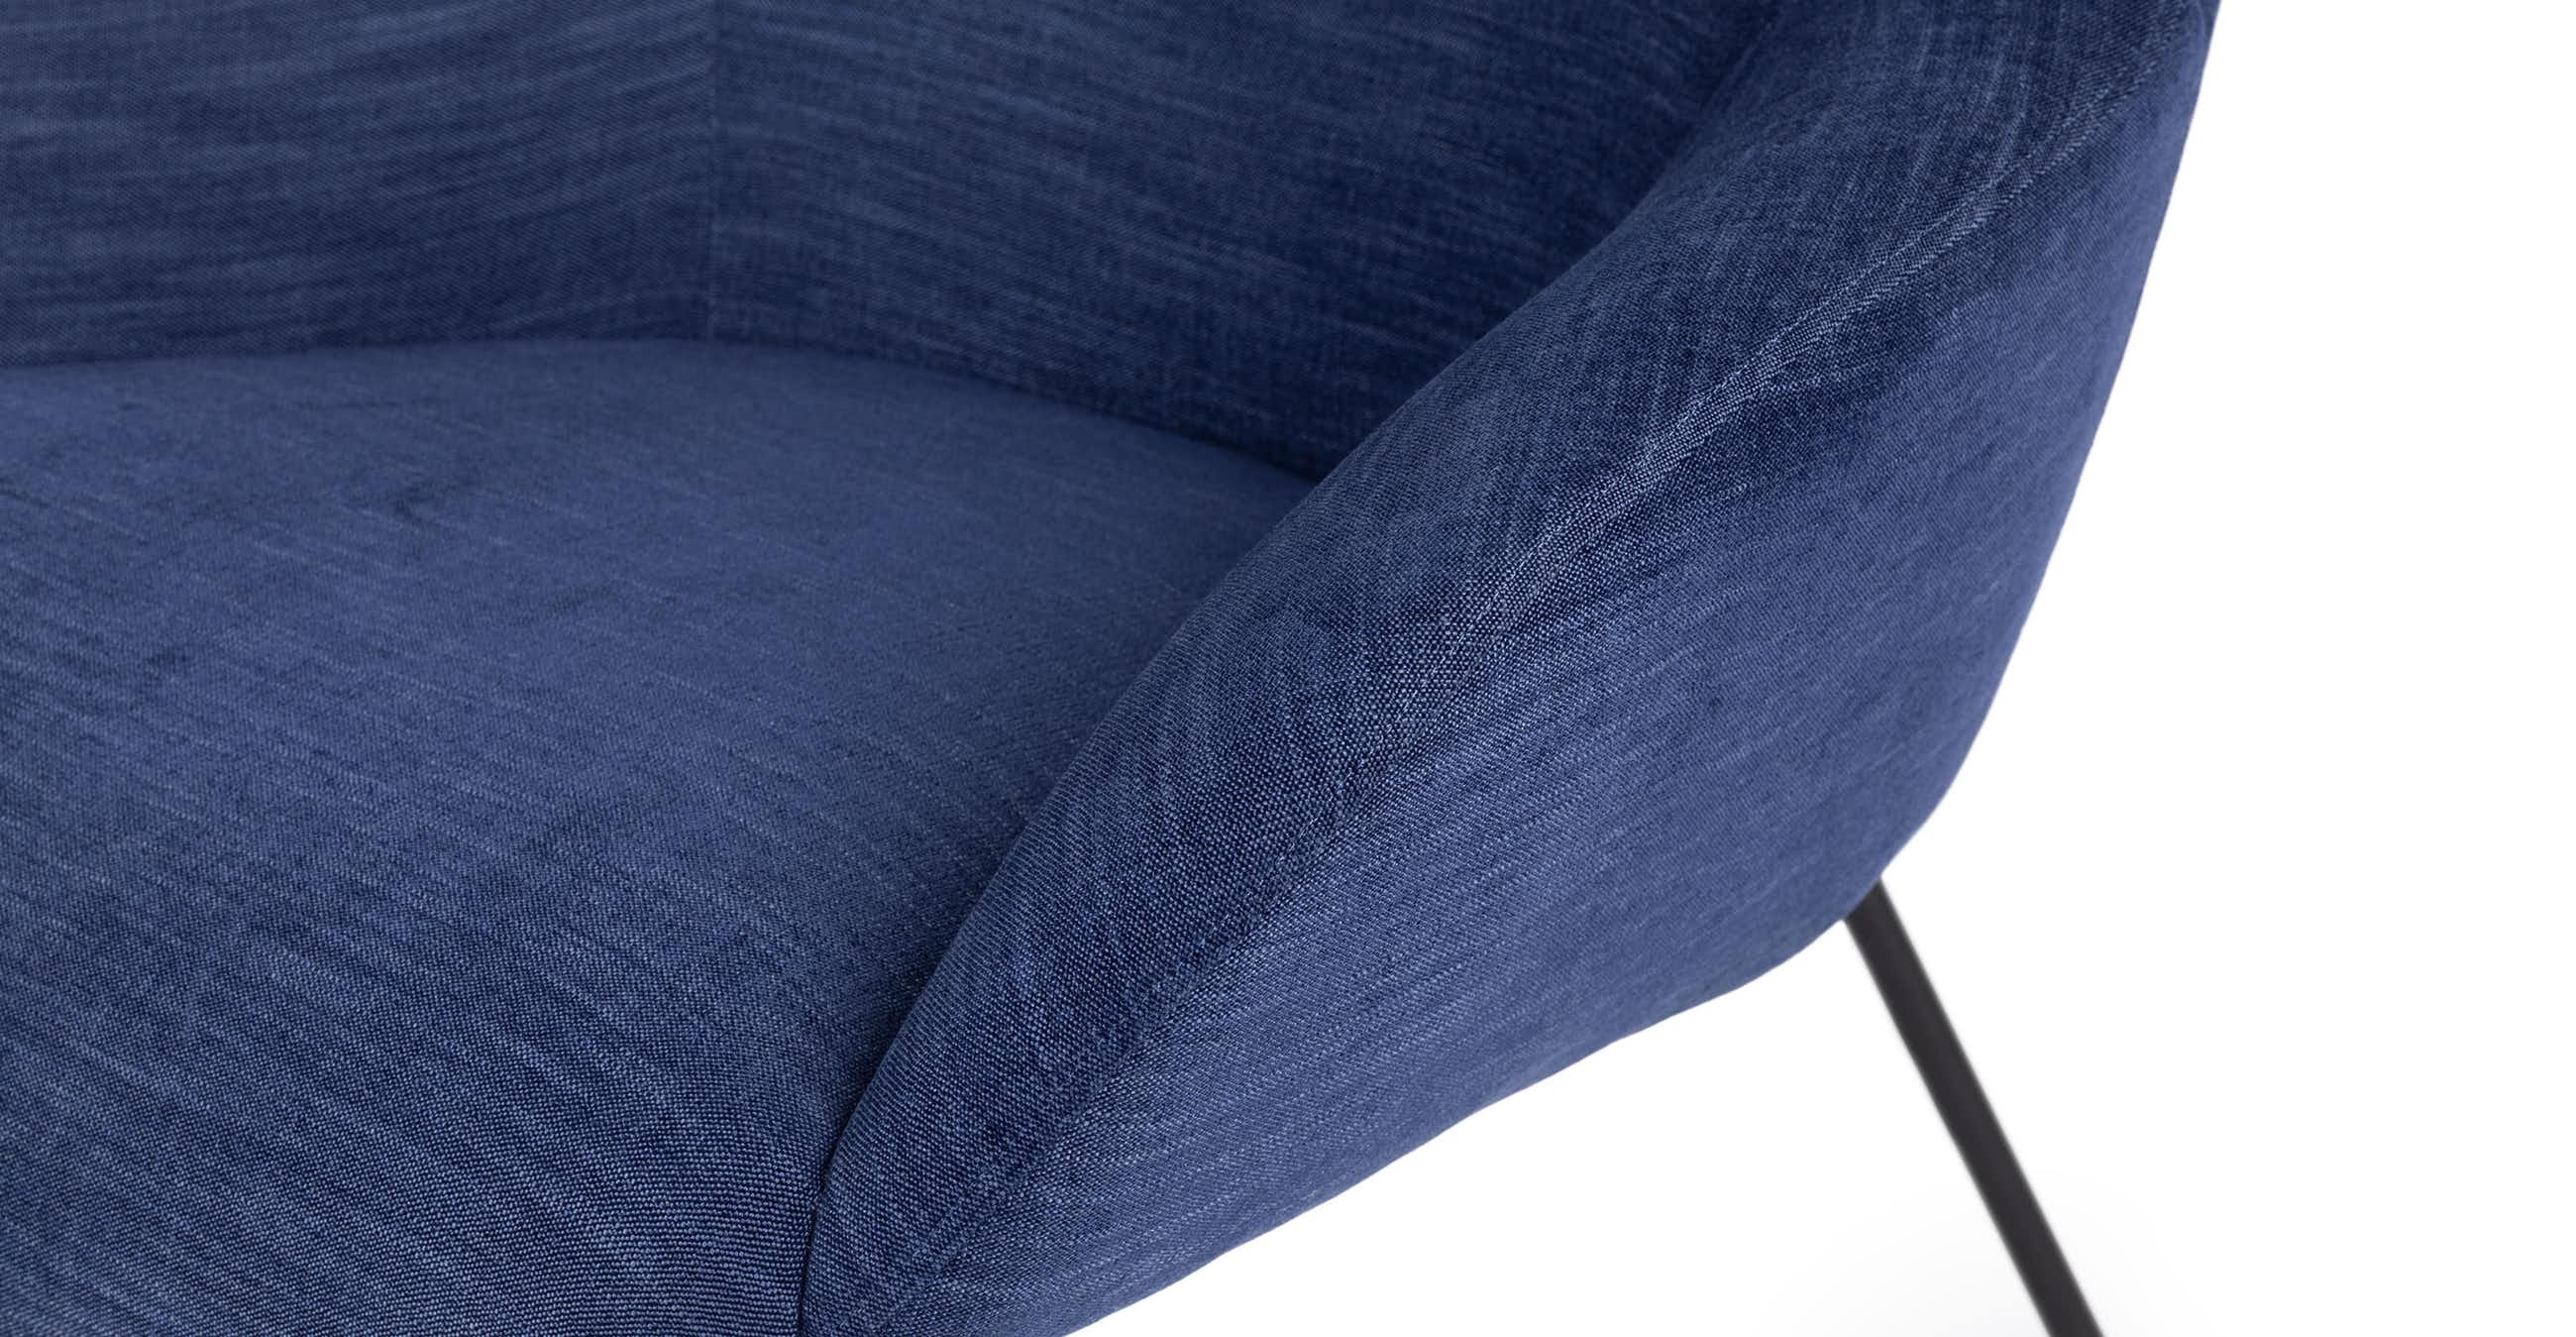 Savary Chair Lapis Blue - Image 4